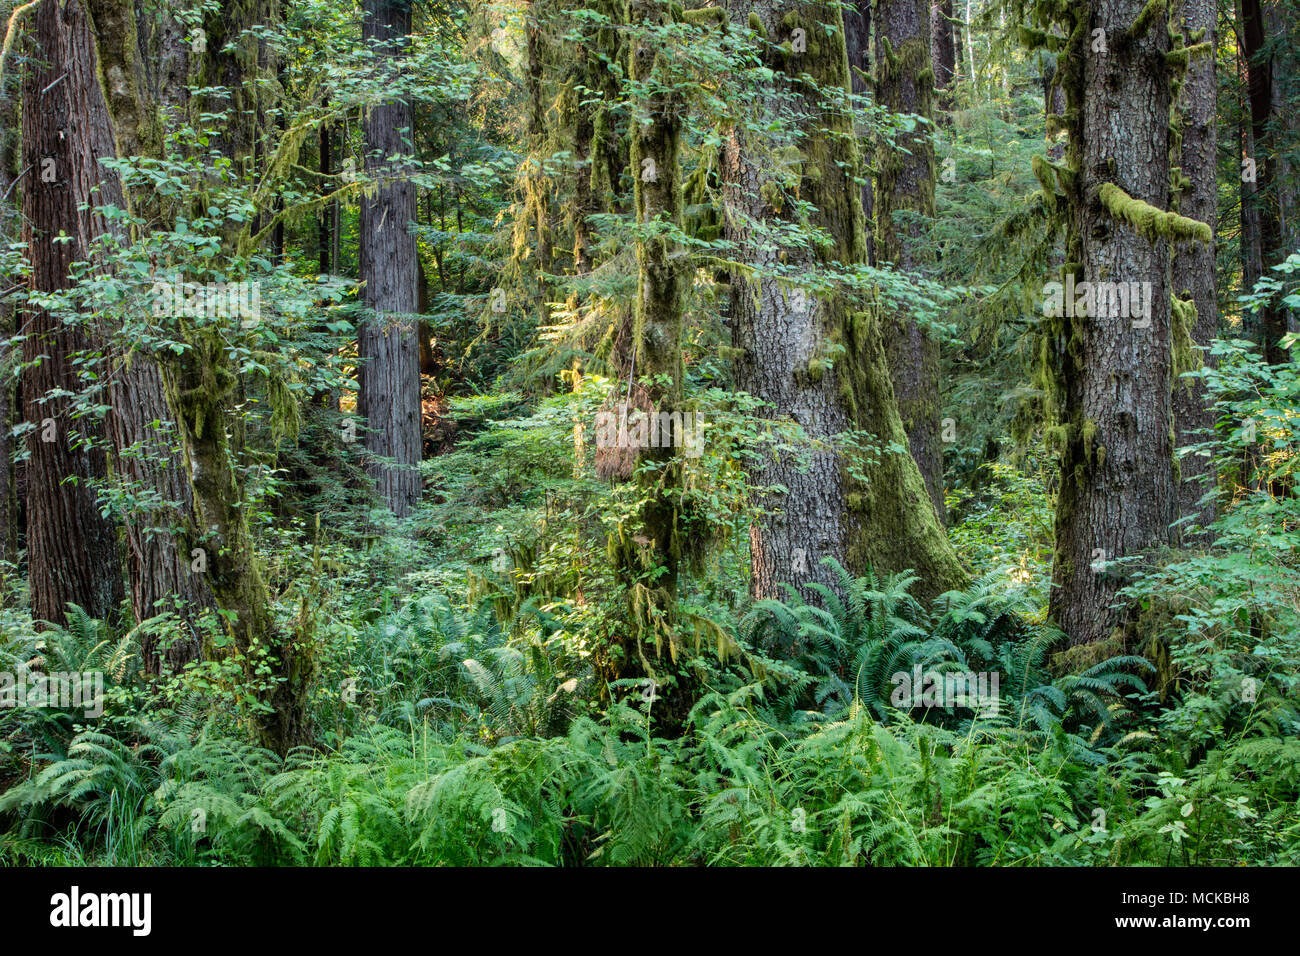 Pianta rigogliosa la crescita si verifica nel Parco Nazionale di Redwood in California del Nord. Questa zona è uno dei luoghi più belli della costa occidentale. Foto Stock